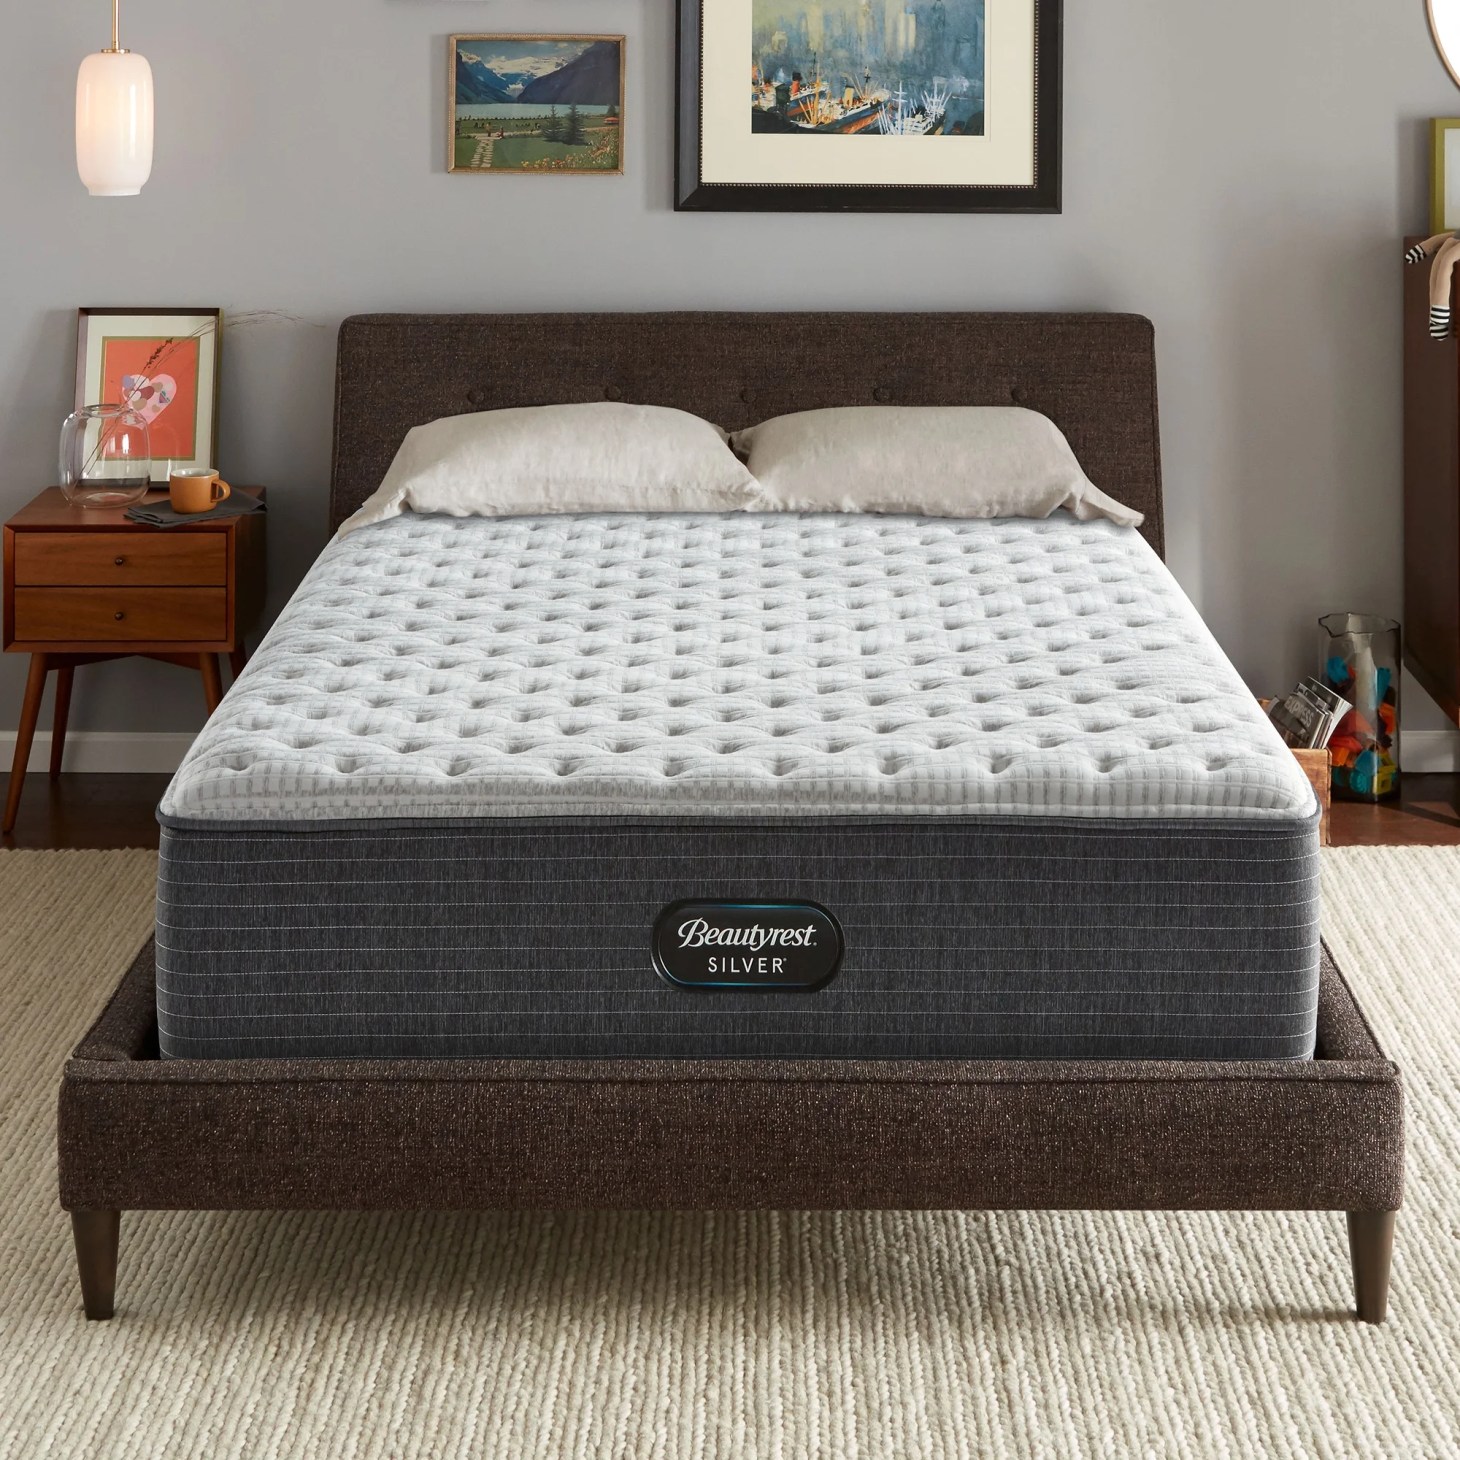 beautyrest silver brs900 extra firm mattress at walmart